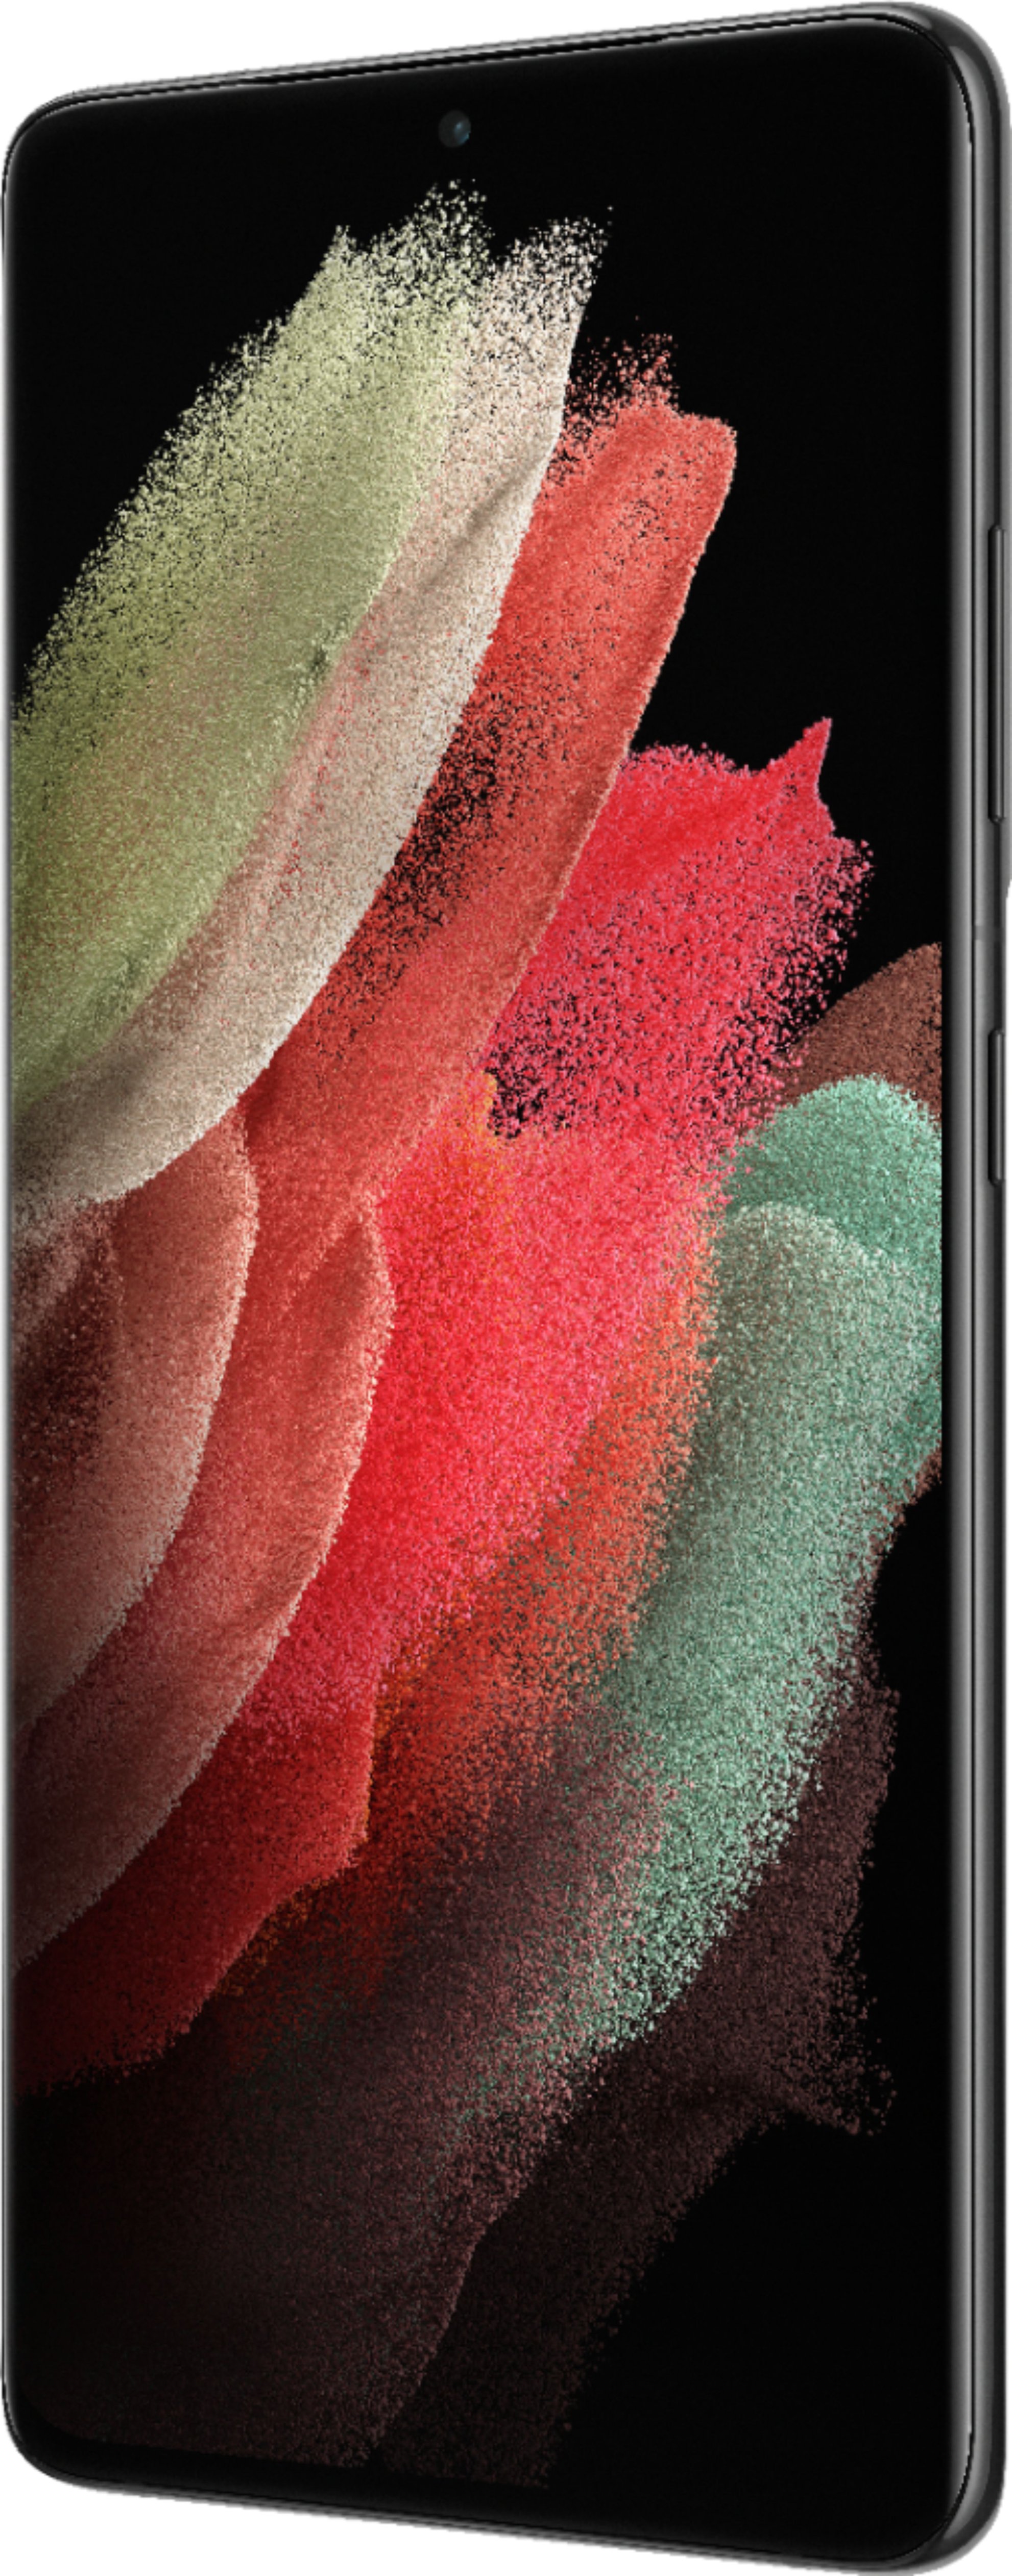 Verizon Samsung Galaxy S21 Ultra 5G Black 512GB 